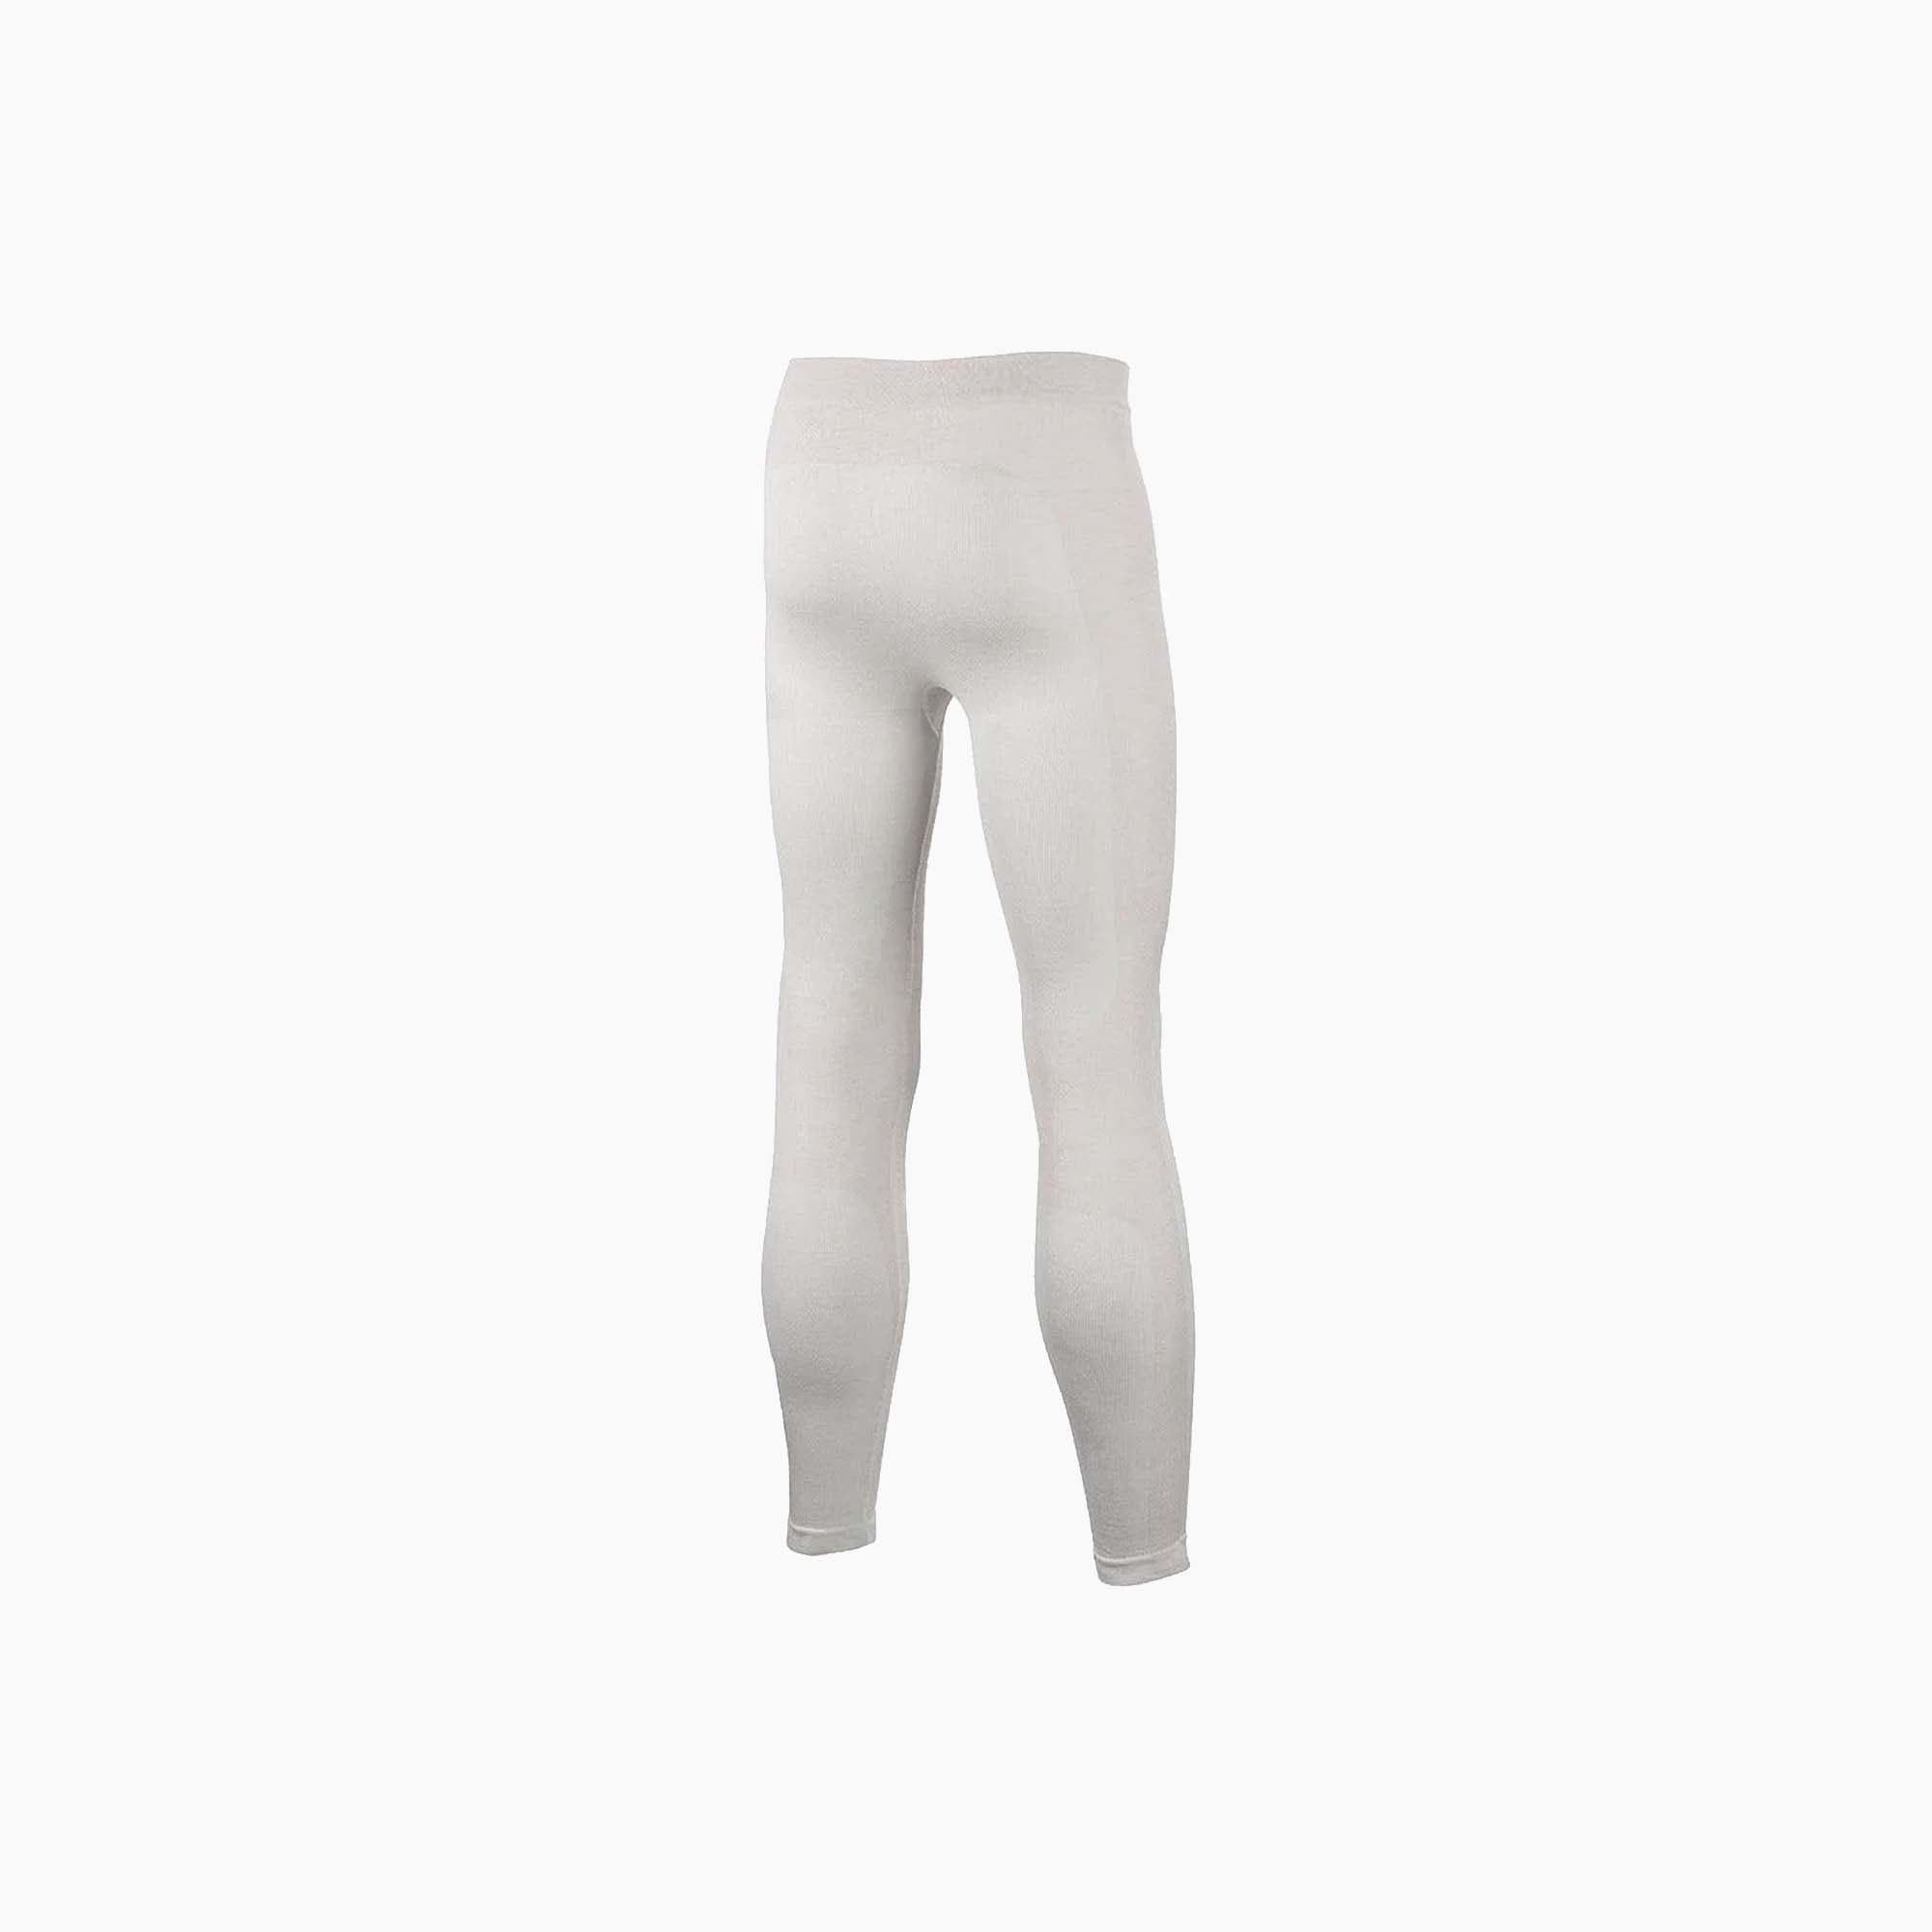 Alpinestars | ZX EVO V2 Underwear Bottoms-Racing Underwear-Alpinestars-gpx-store